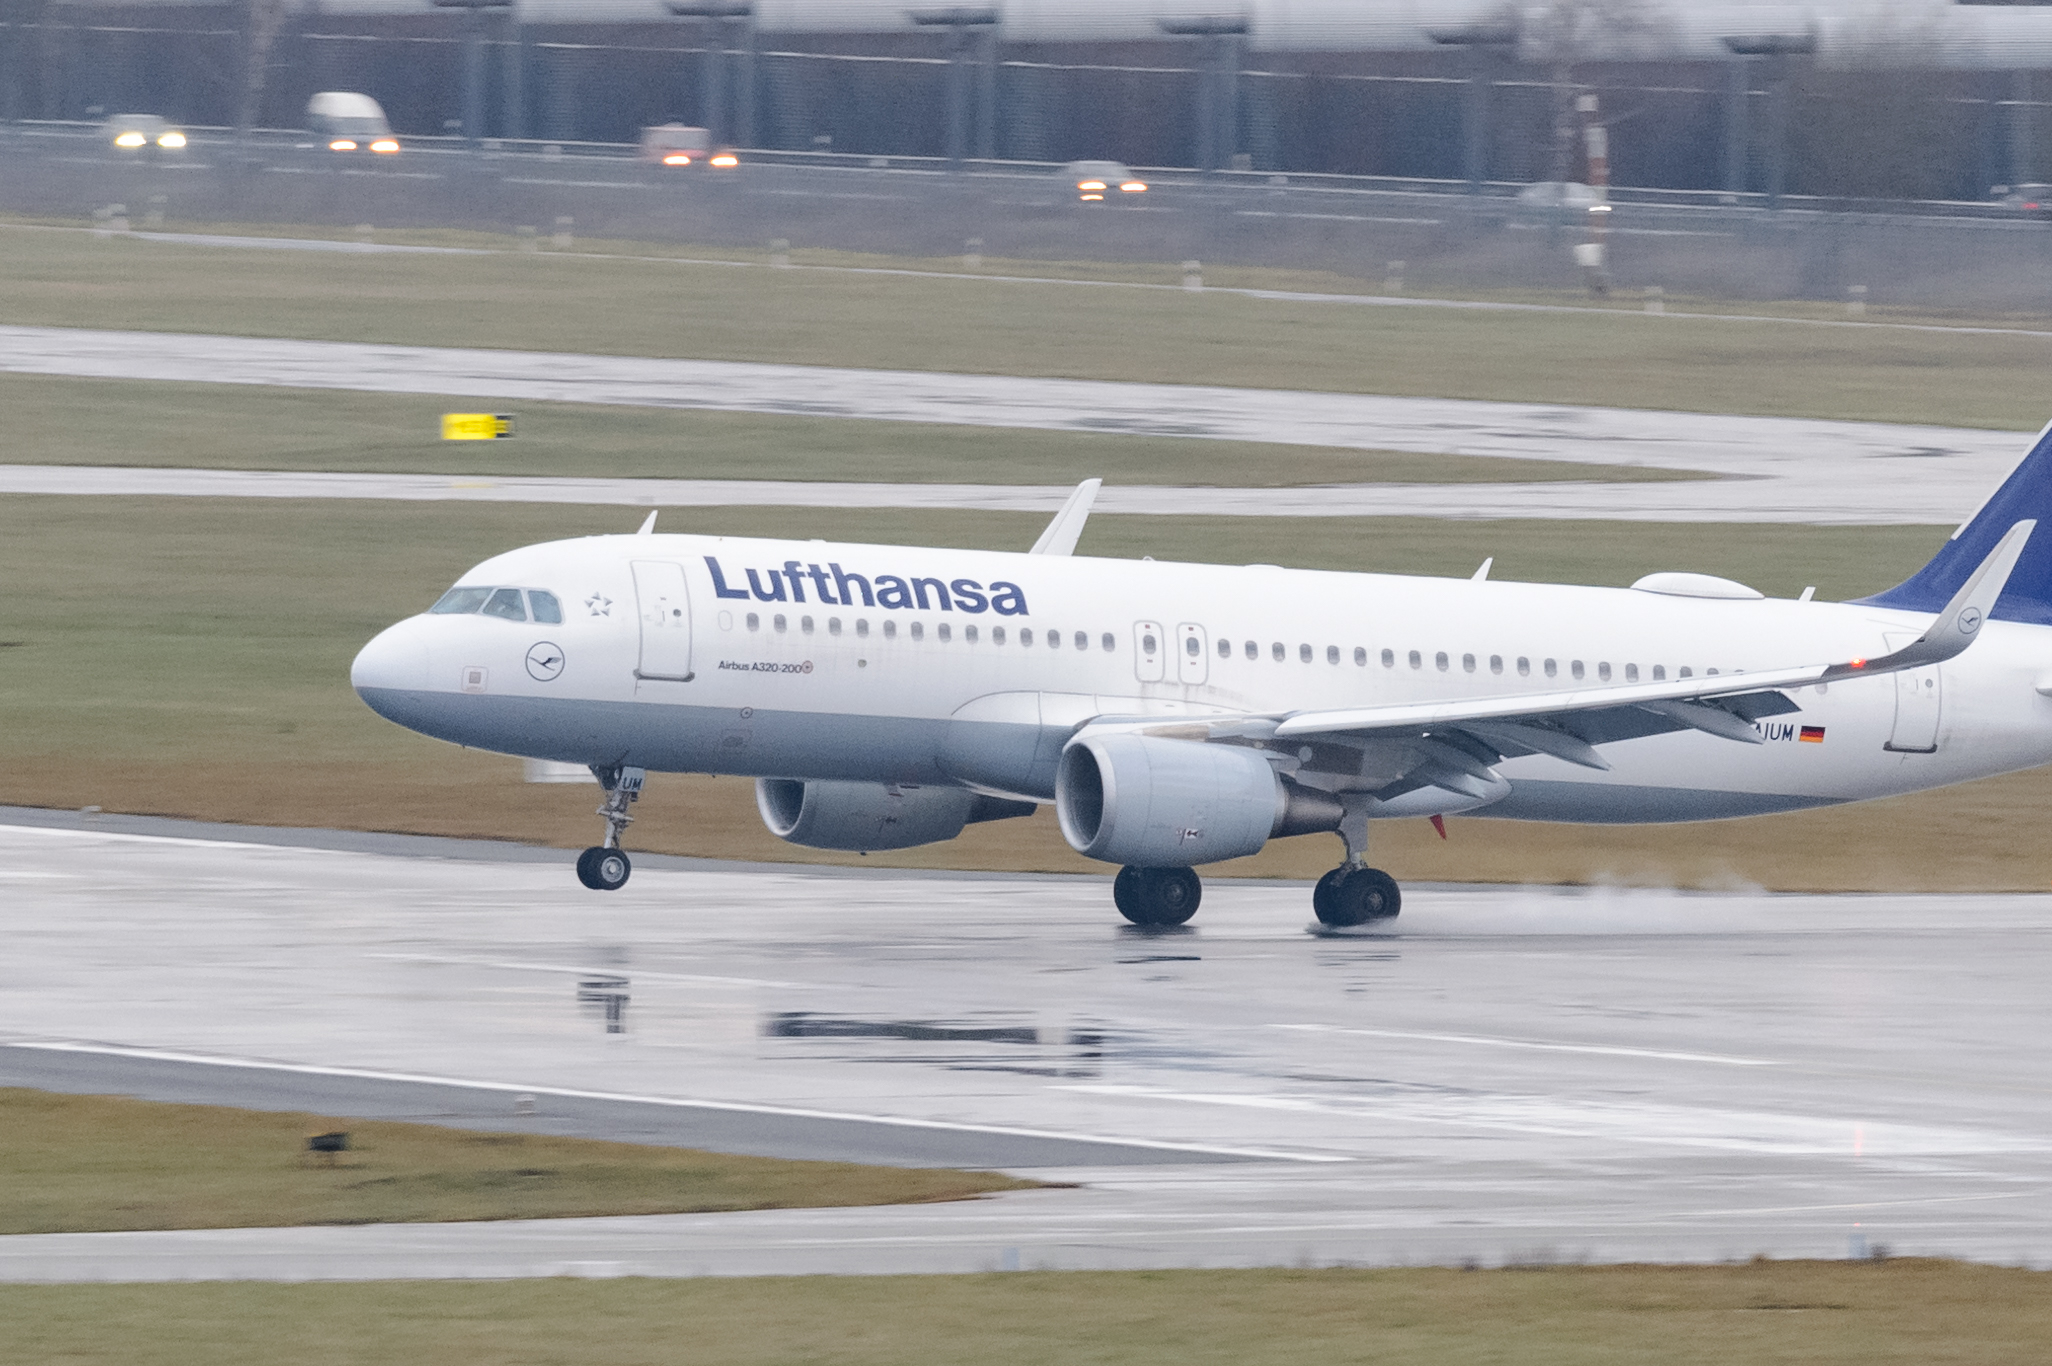 Ein Airbus A320 der Fluggesellschaft Lufthansa landet auf dem nassen Rollfeld.